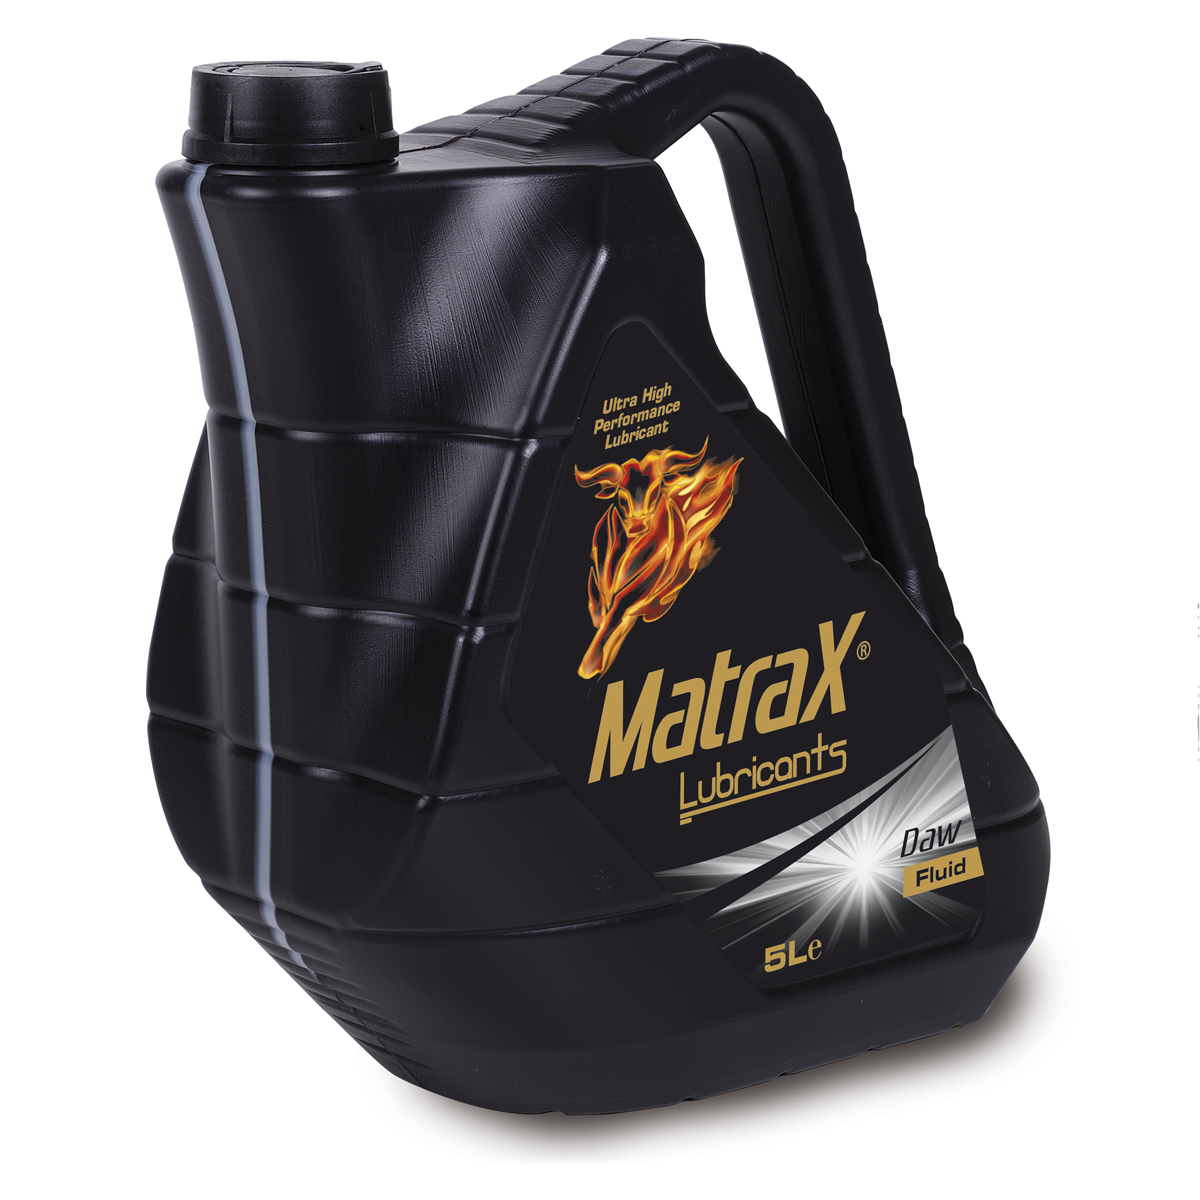 matrax-lubricants-daw-fluid-5l